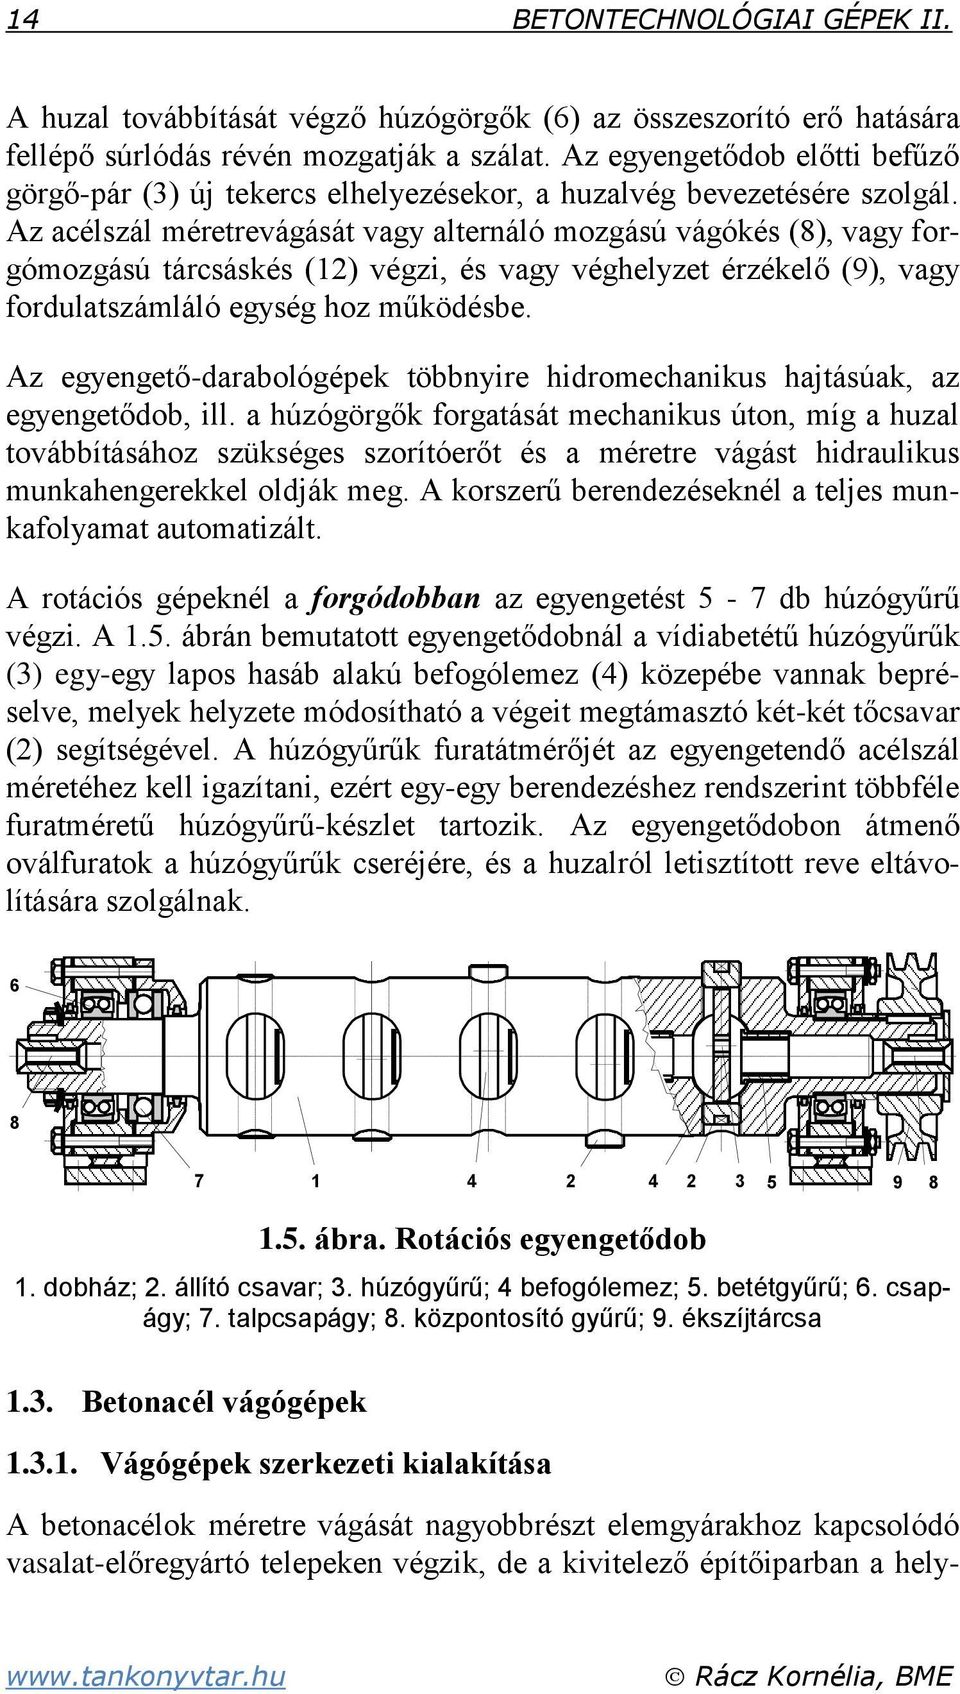 6 BETONTECHNOLÓGIAI GÉPEK II. - PDF Ingyenes letöltés